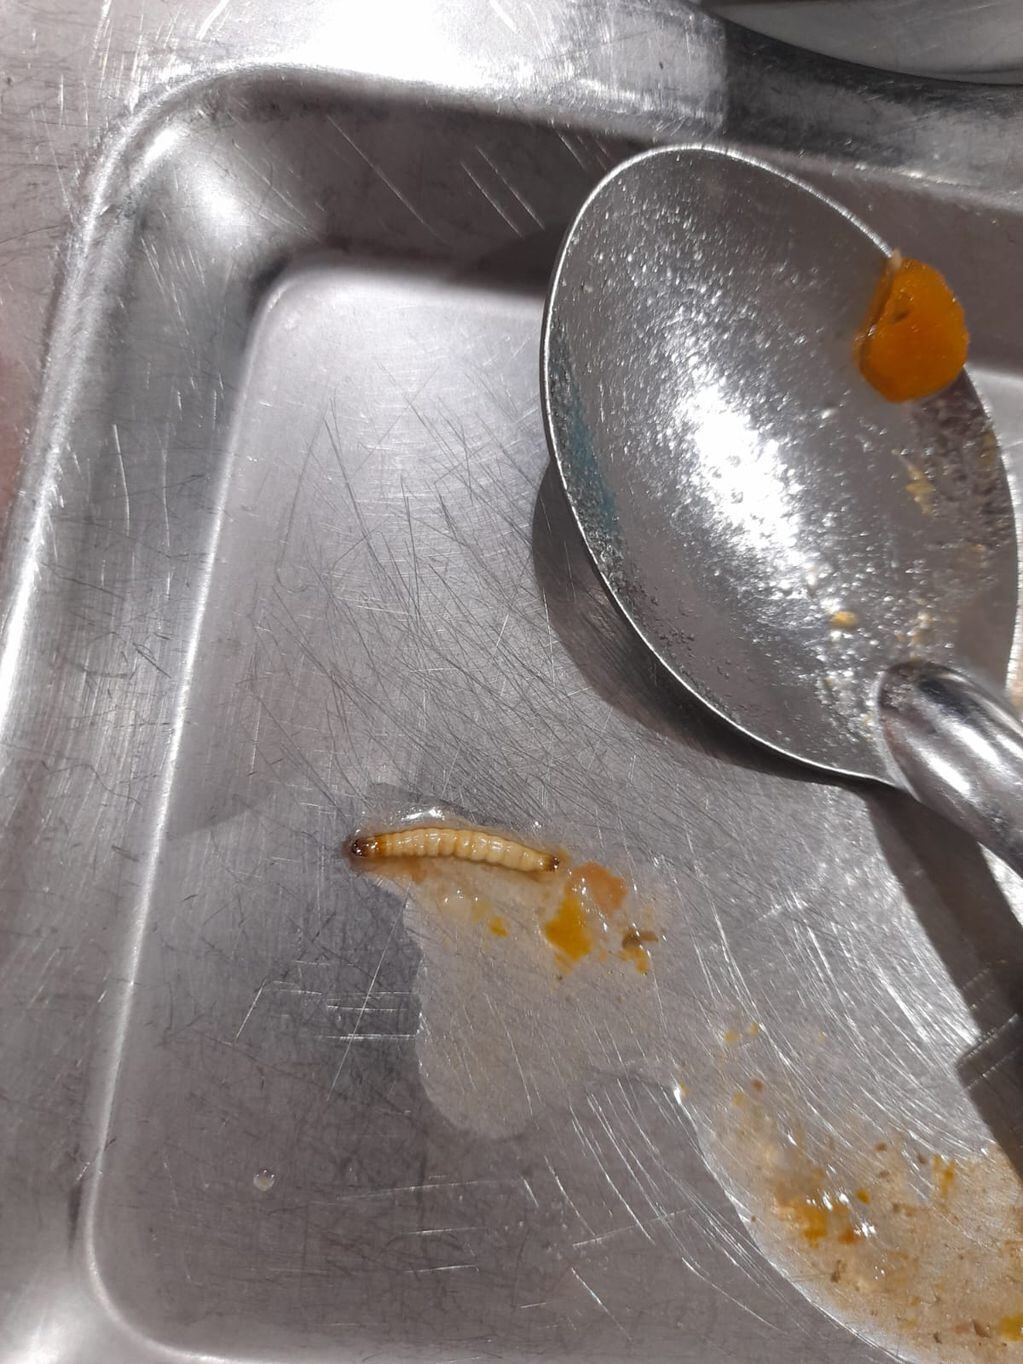 Río Cuarto. La larva encontrada en una de las viandas escolares (Gentileza).